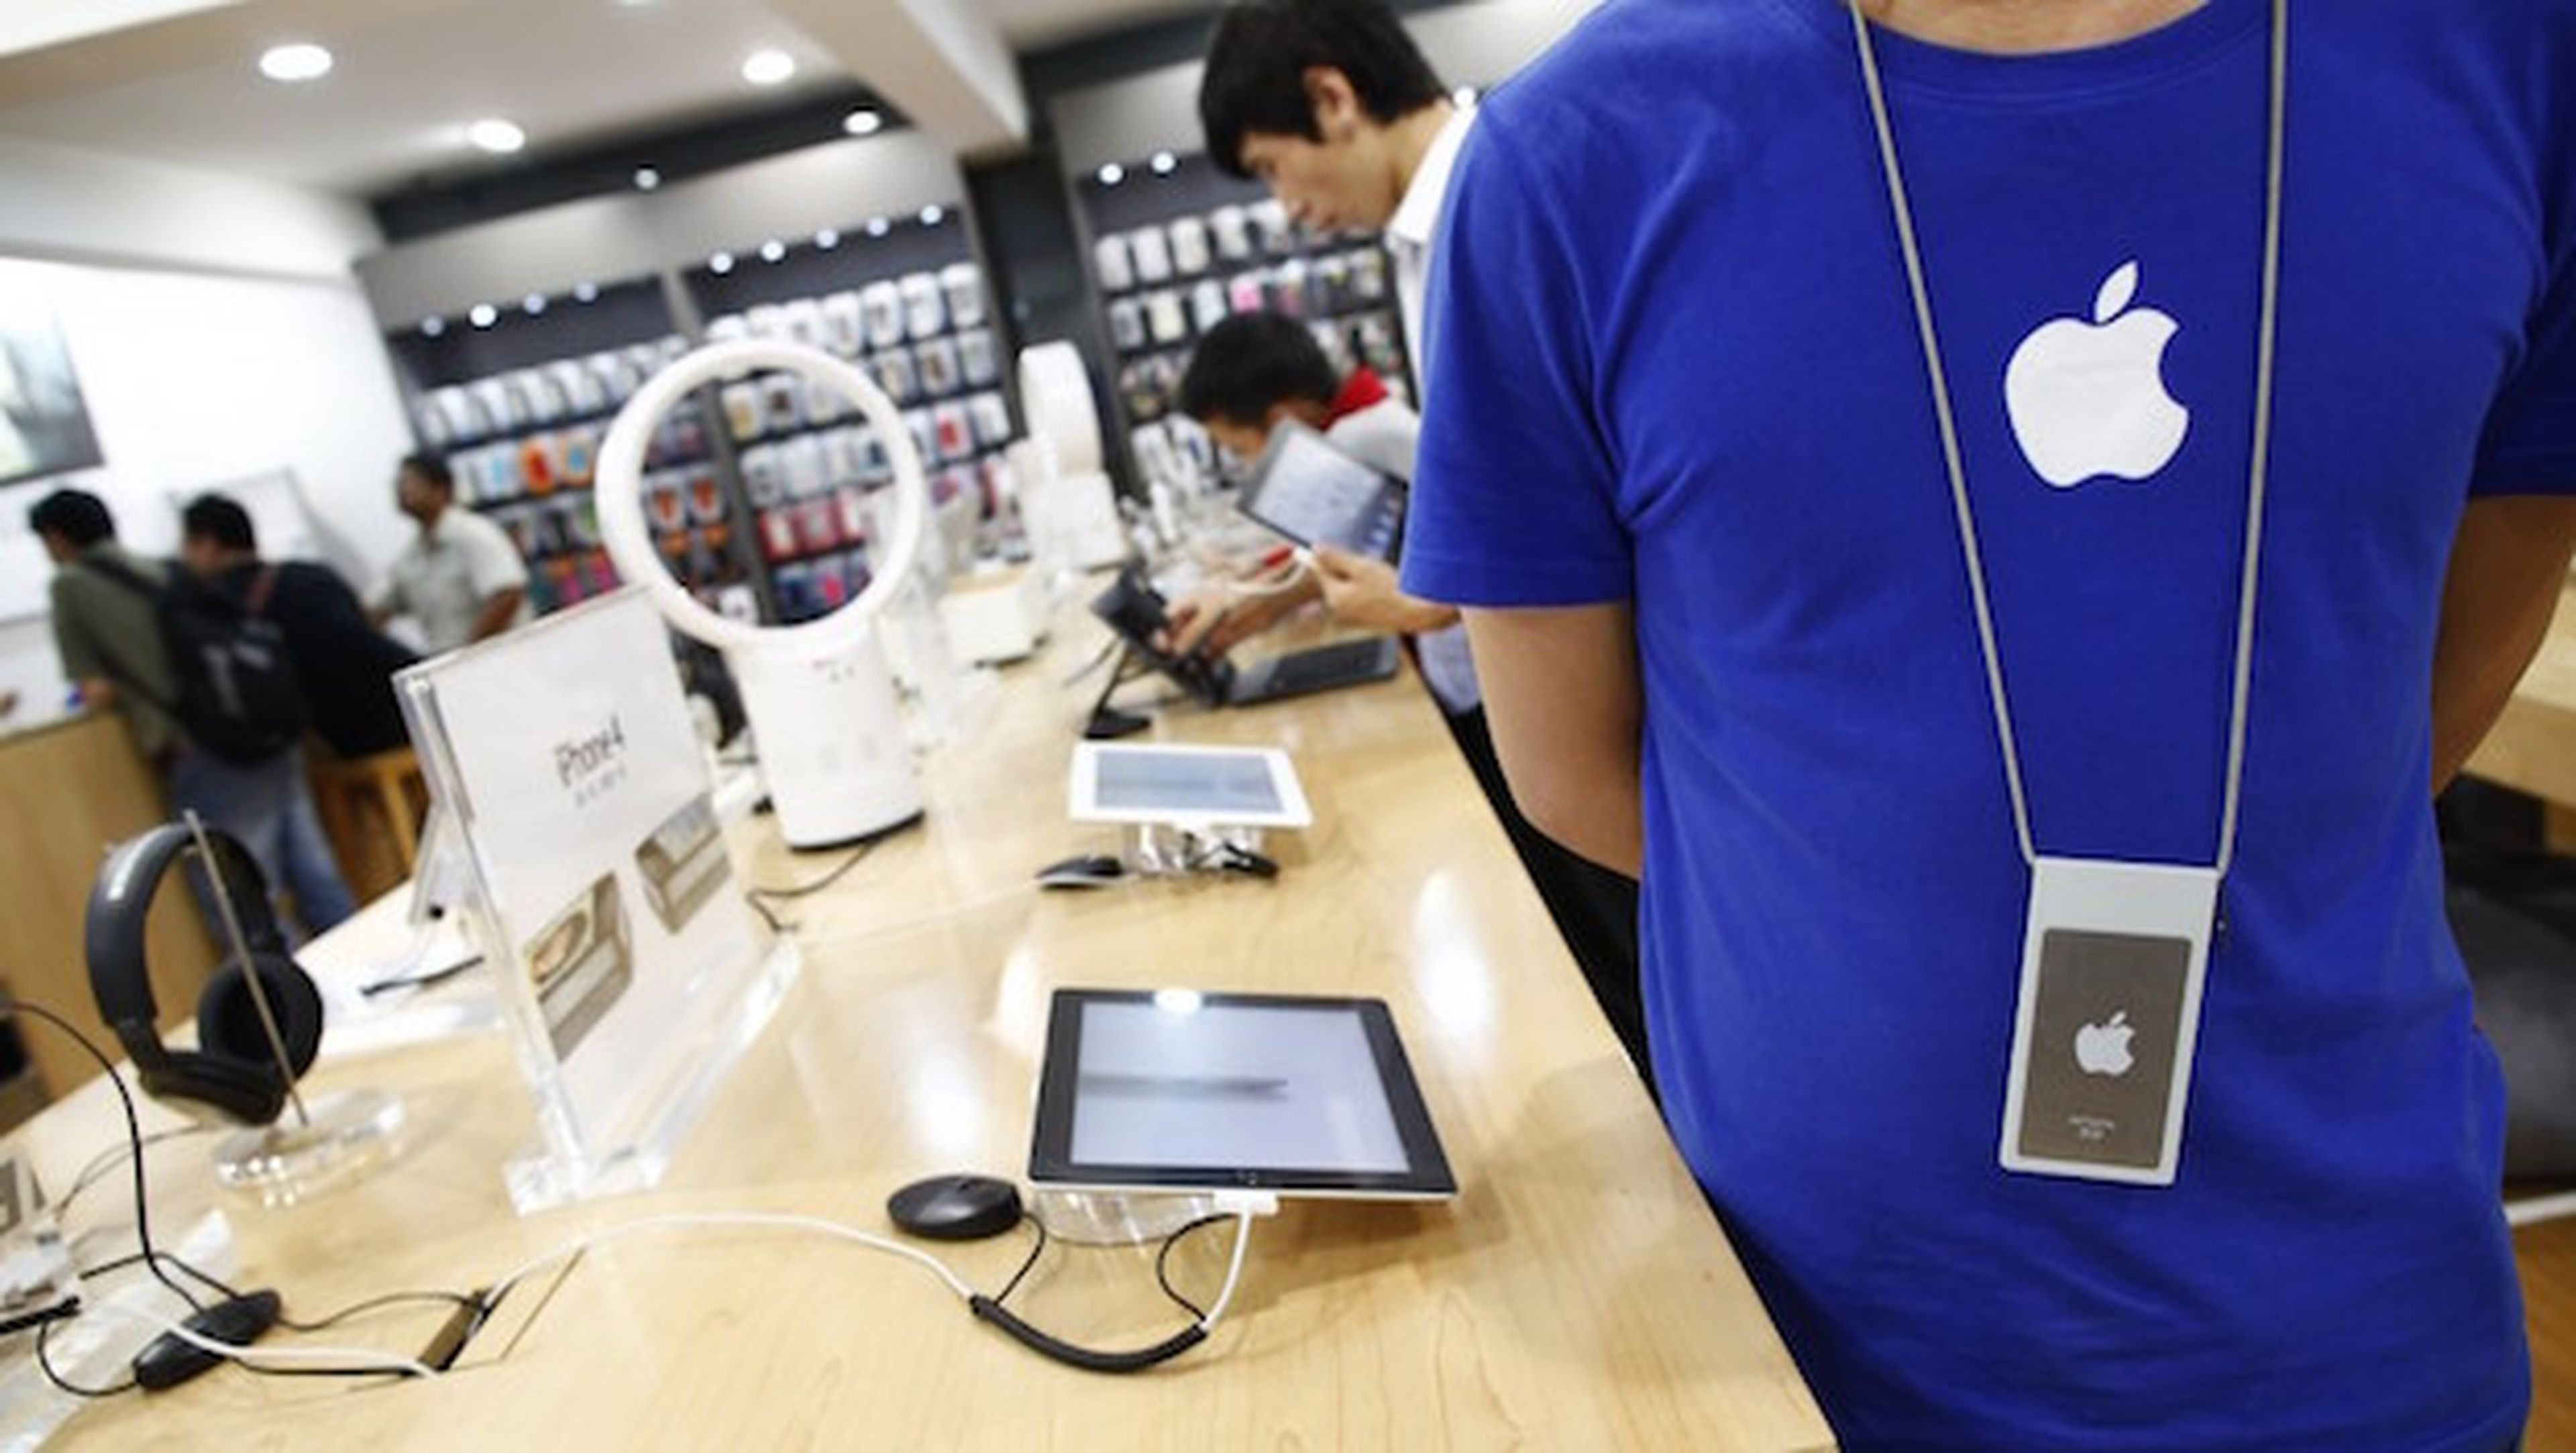 Descubren Apple Store falsas en China